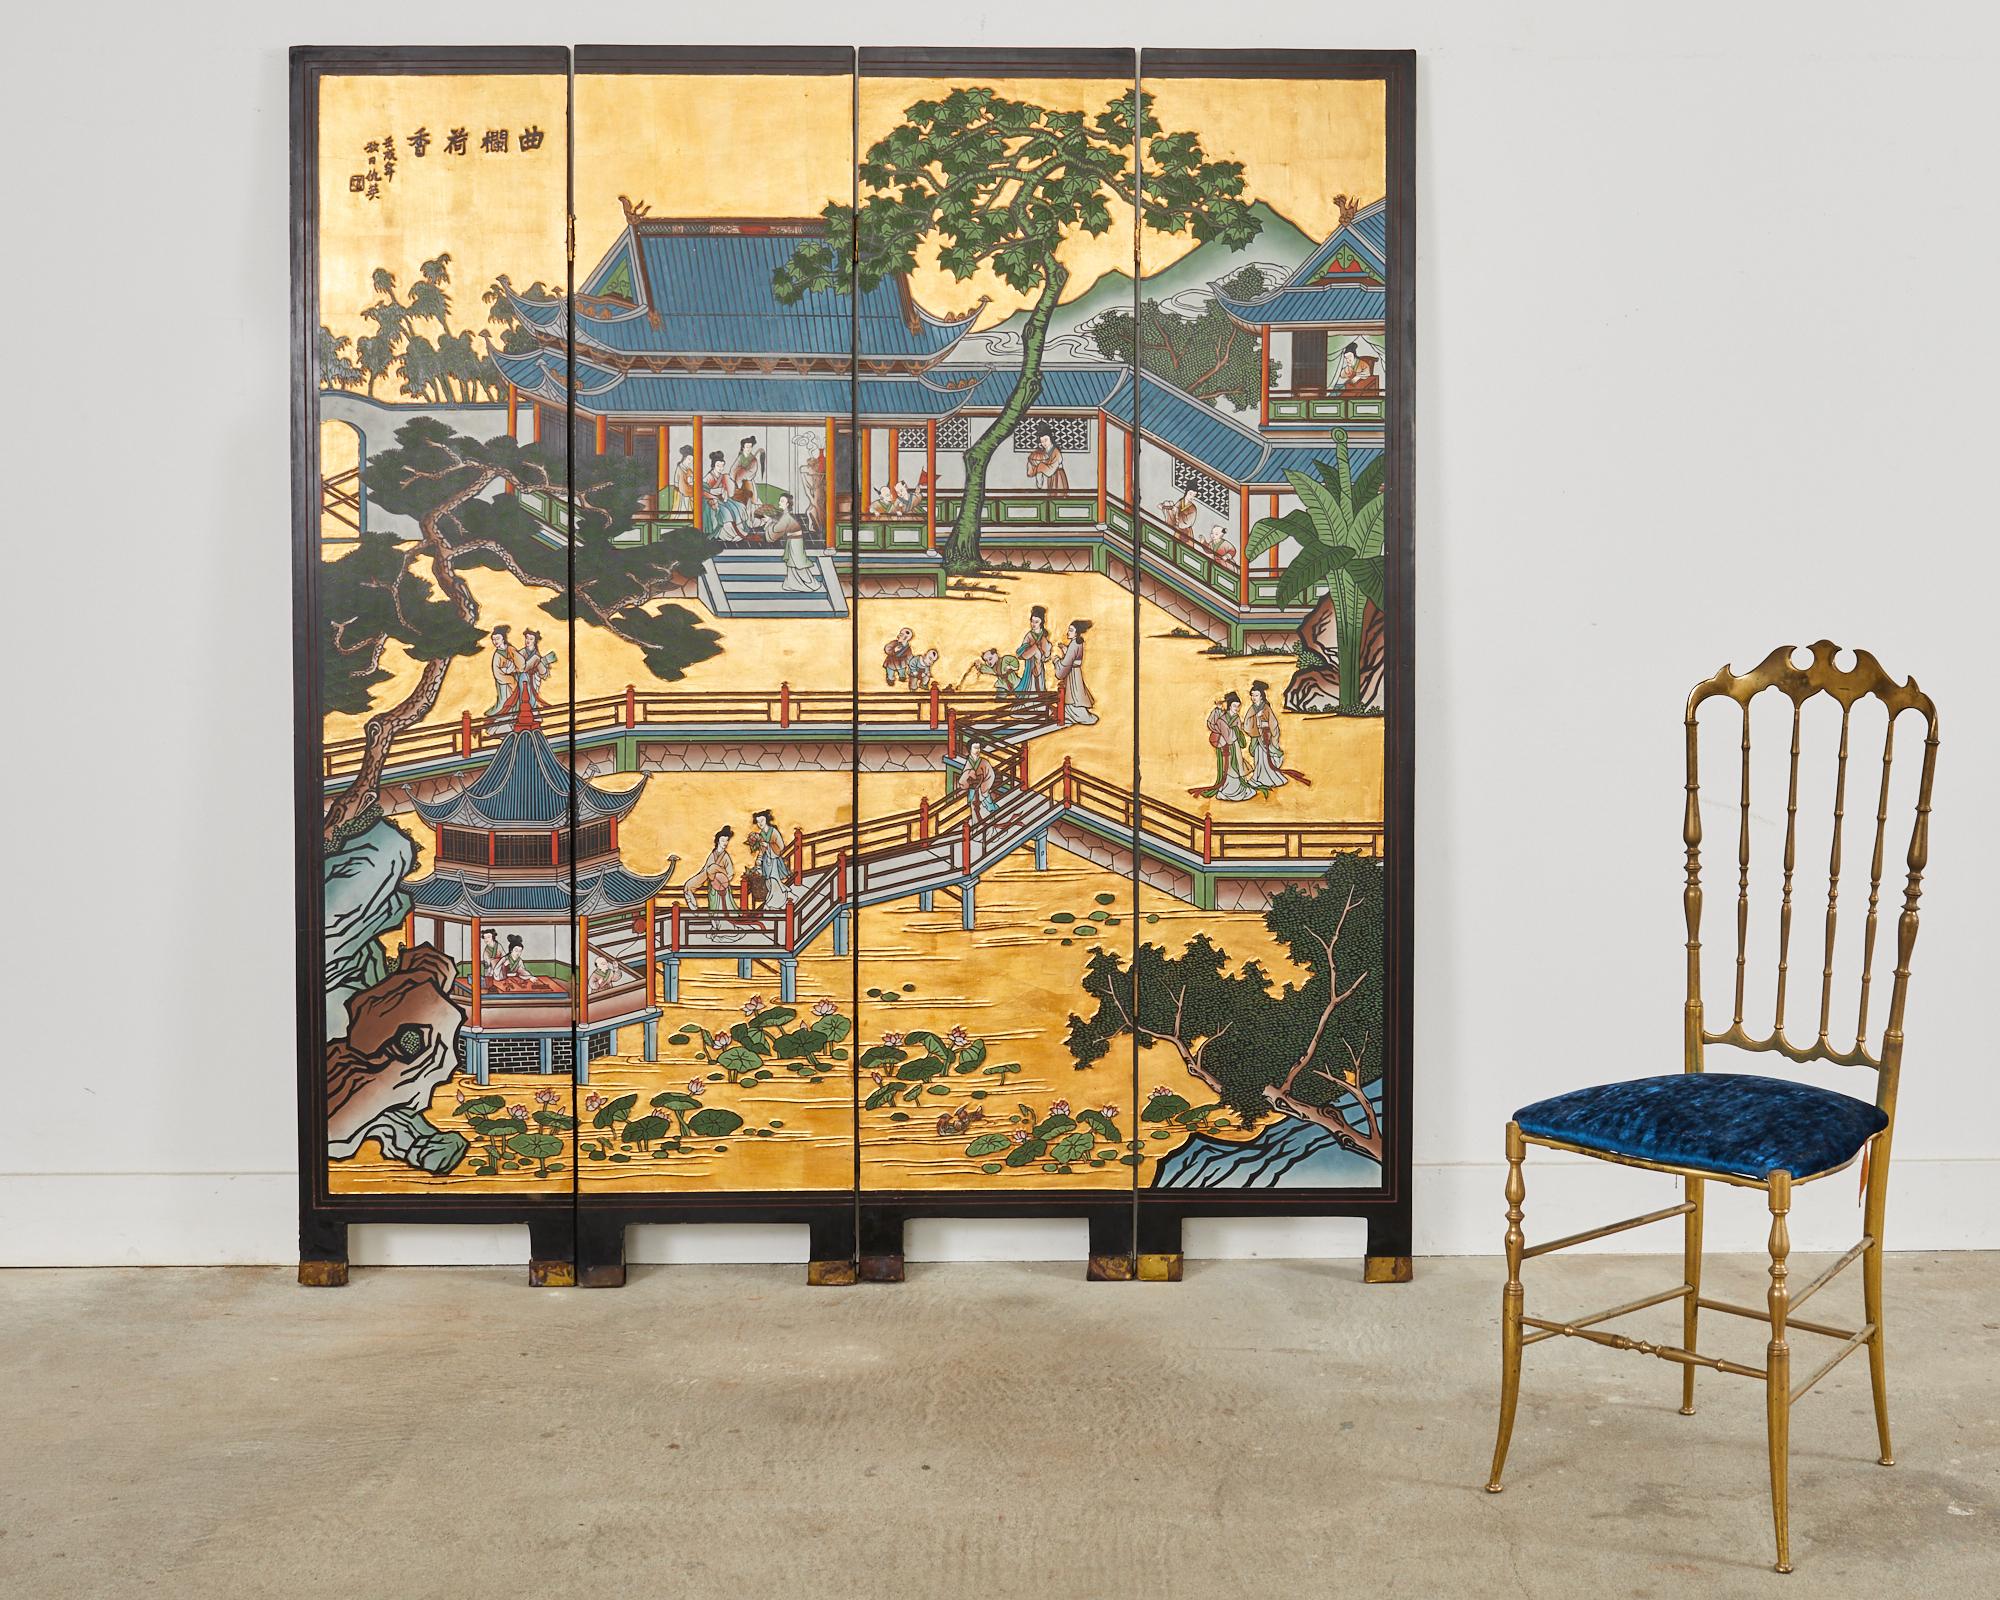 Extraordinaire écran coromandel à quatre panneaux d'exportation chinoise représentant un paysage de pagodes et de pavillons sur un fond dramatique de feuilles d'or. Les panneaux laqués noirs sont incisés de pigments de couleurs vives représentant